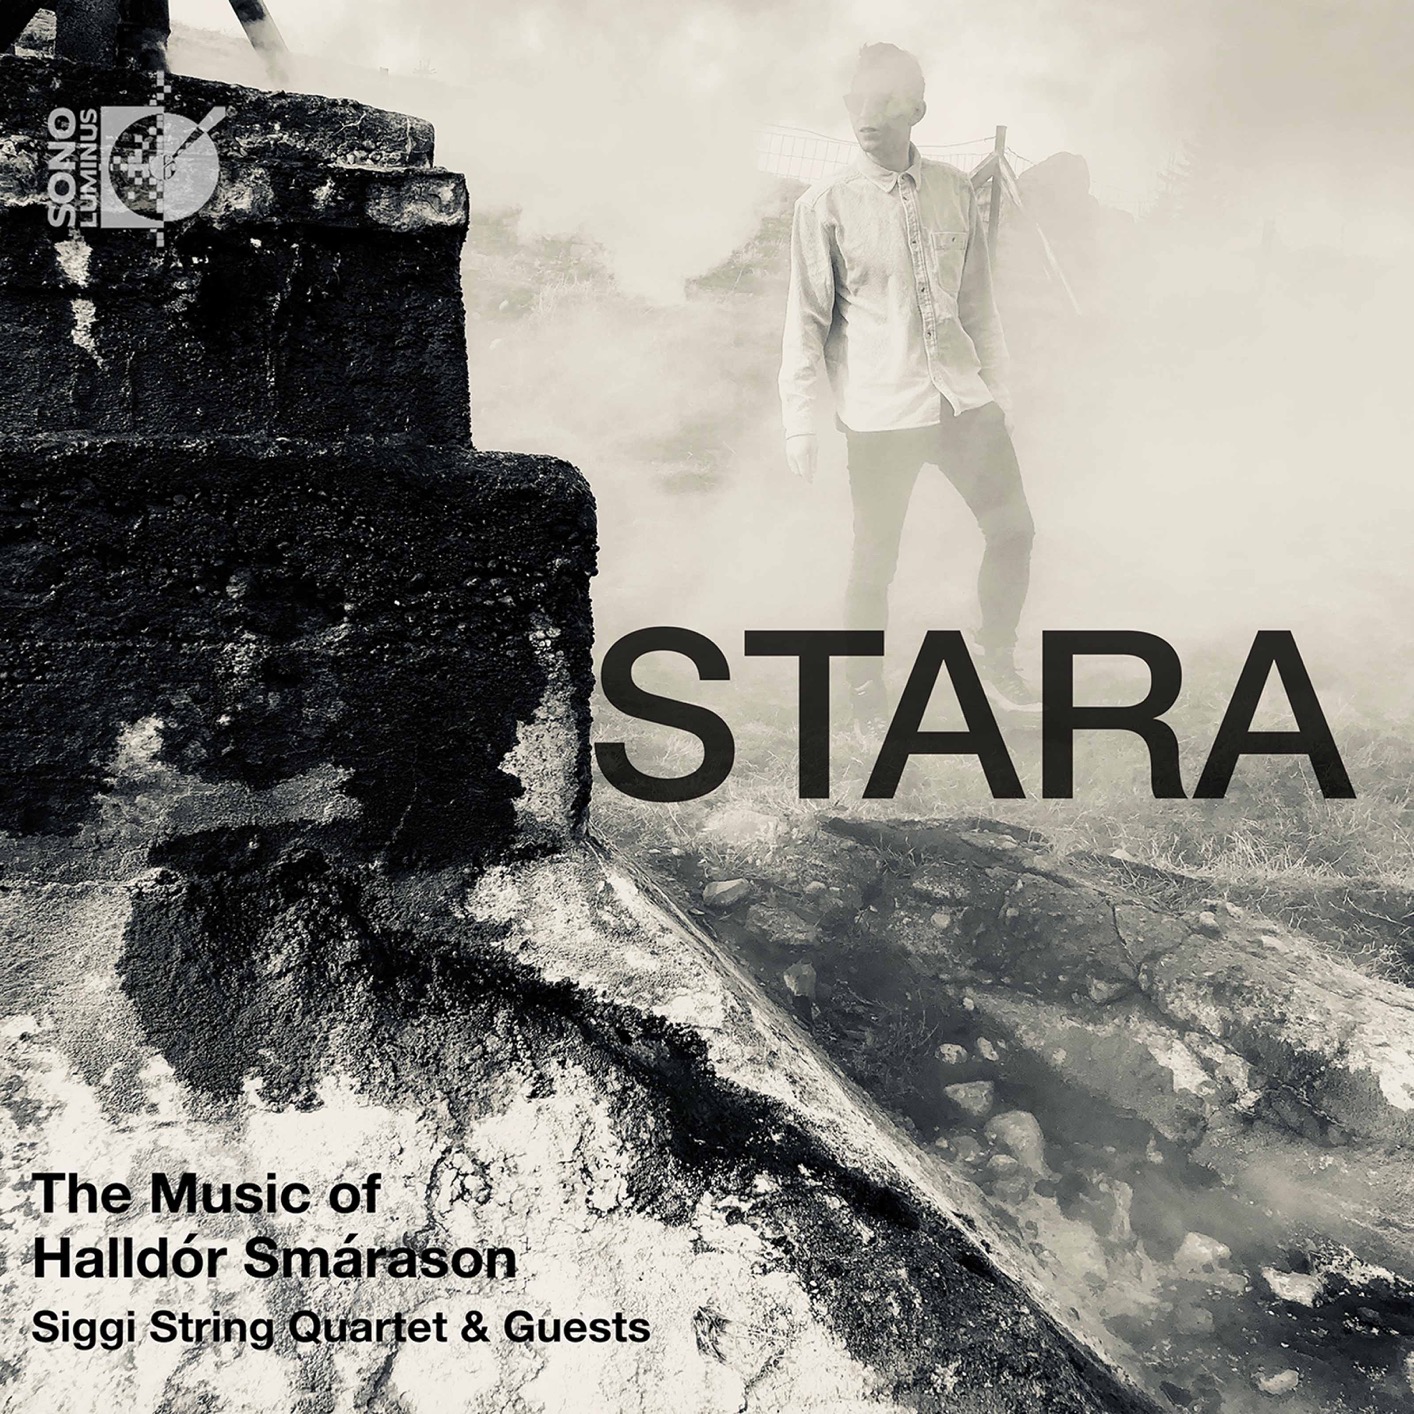 Siggi String Quartet – Stara – The Music of Halldor Smarason (2020) [FLAC 24bit/192kHz]